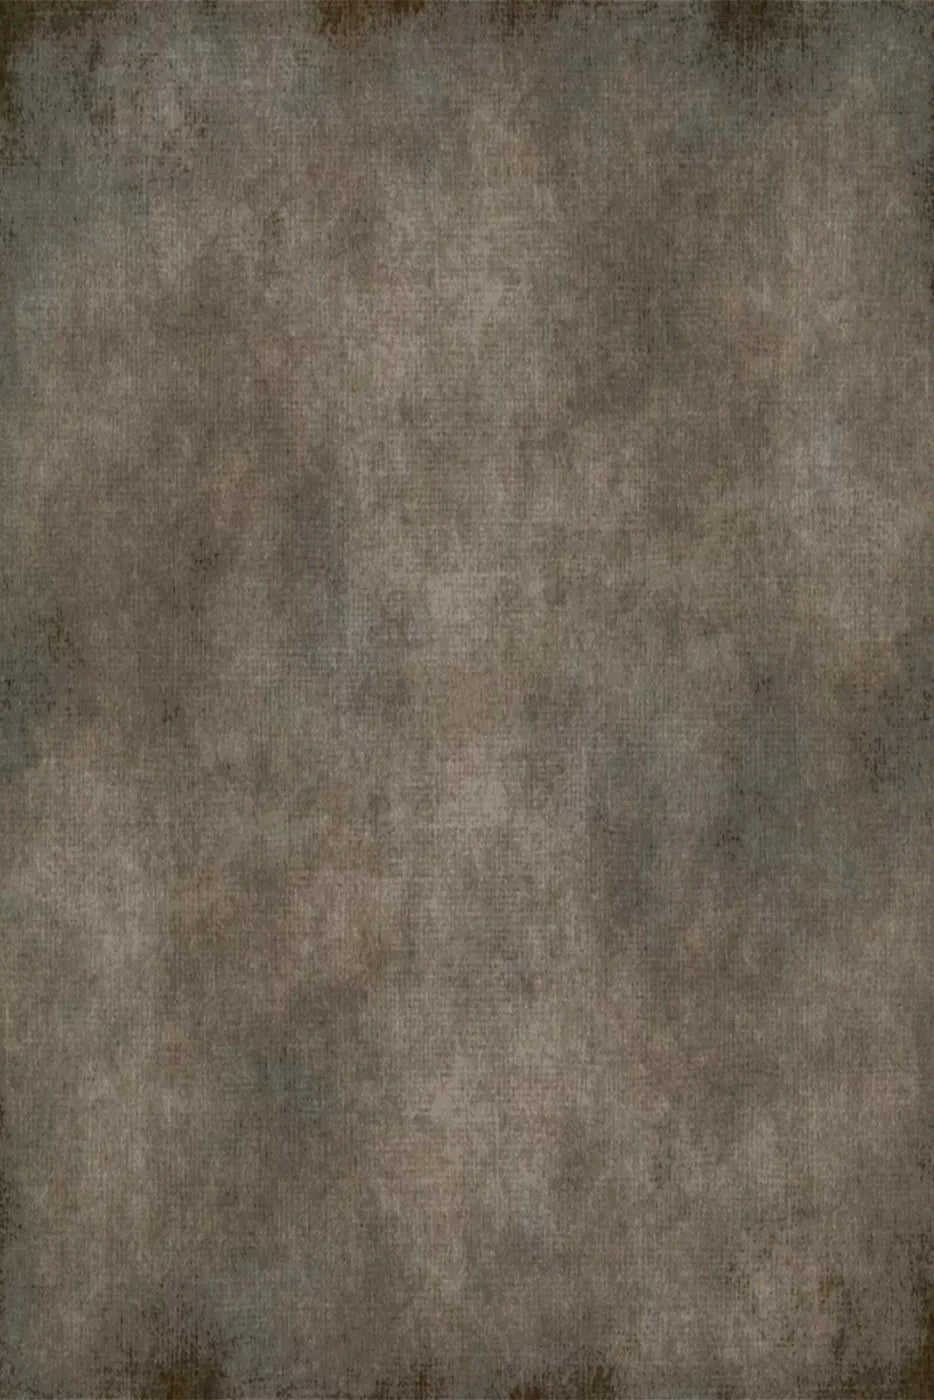 Boon 4X5 Rubbermat Floor ( 48 X 60 Inch ) Backdrop